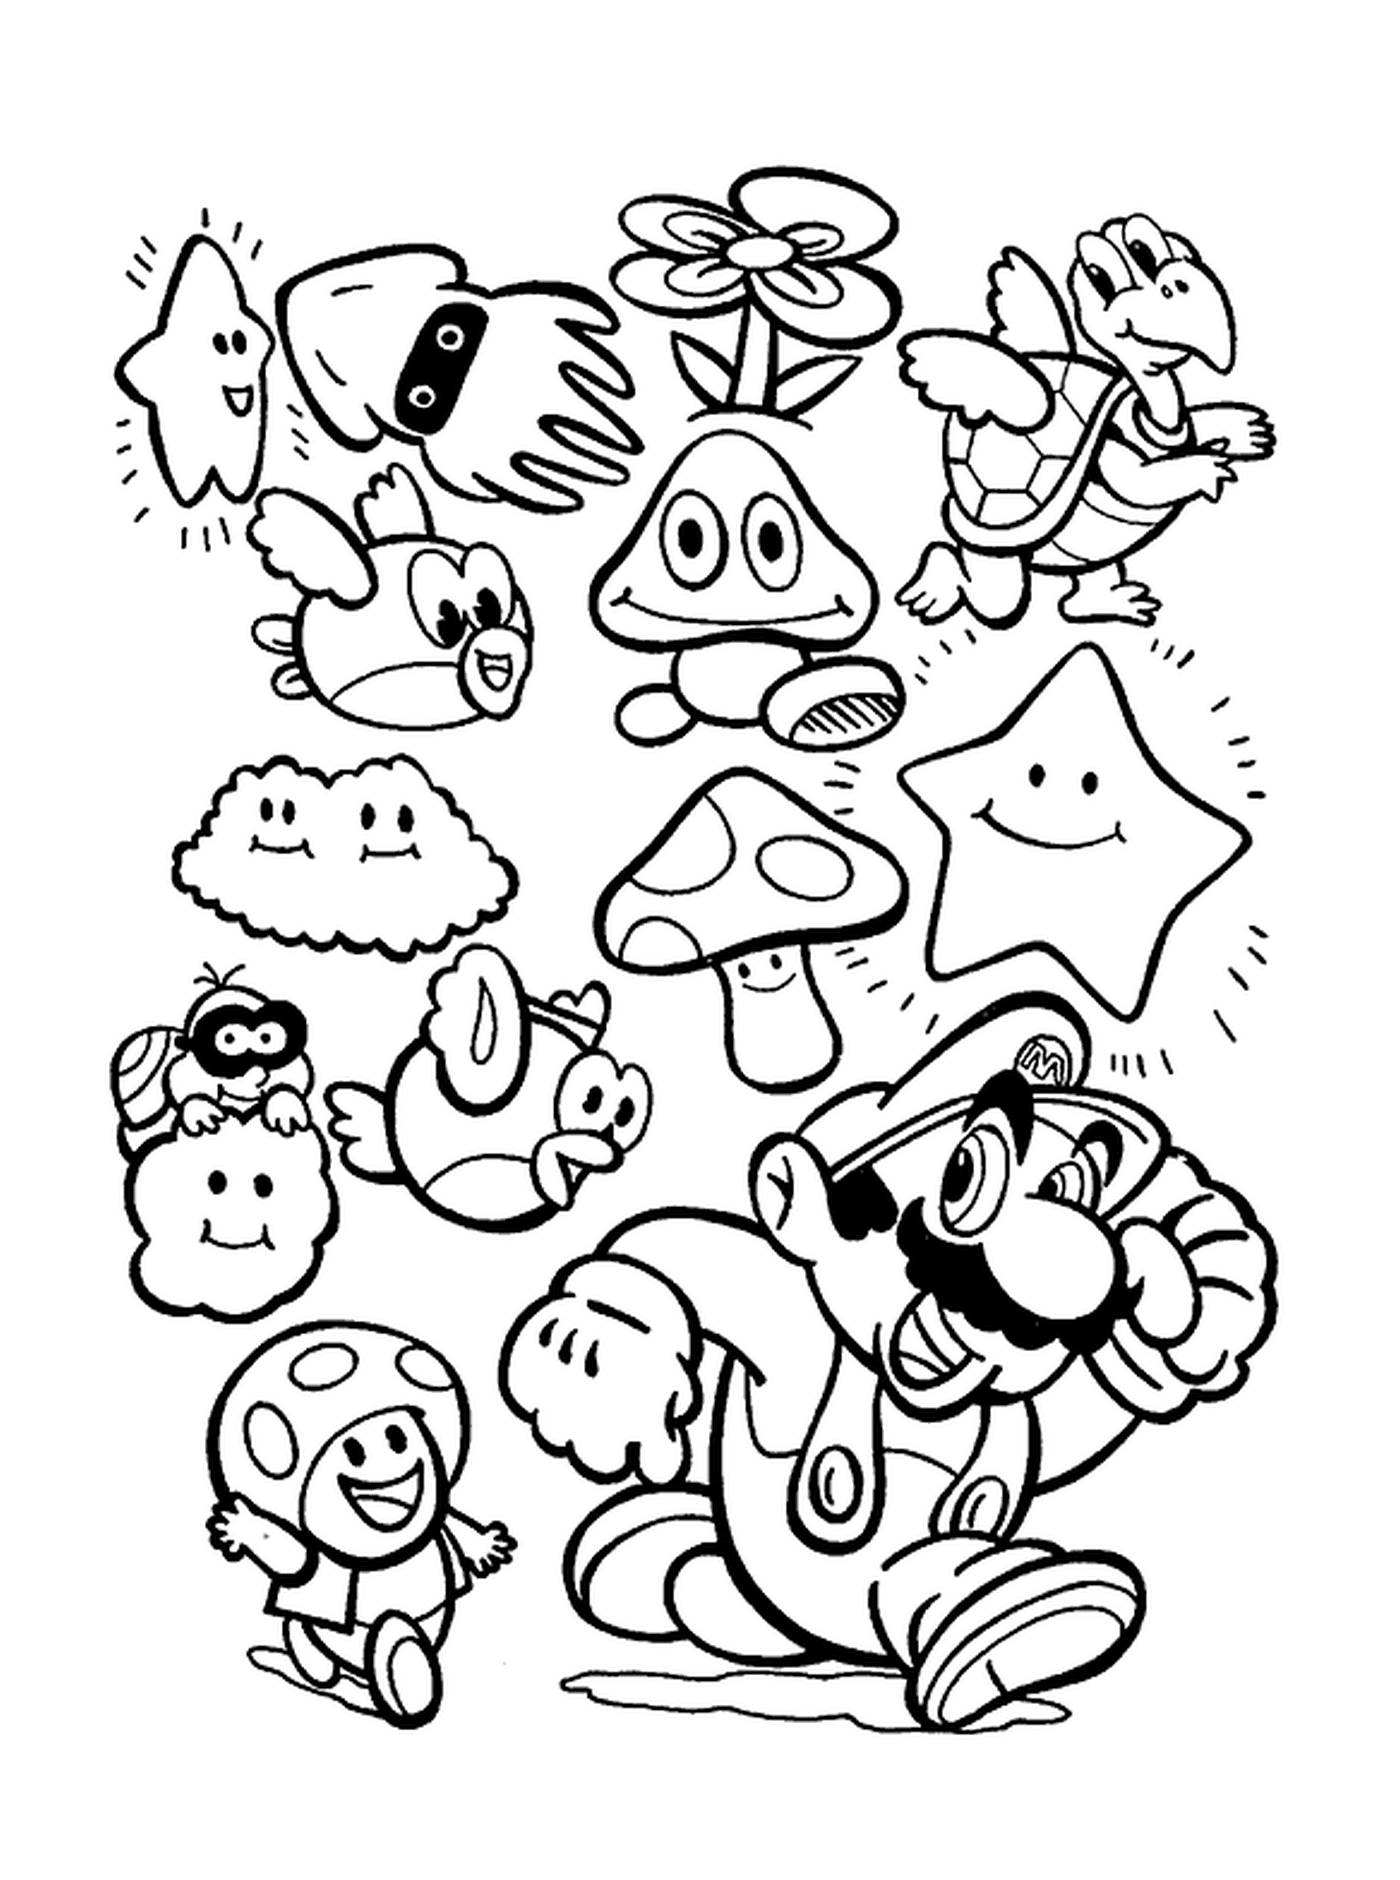   Les personnages de Mario se réunissent 